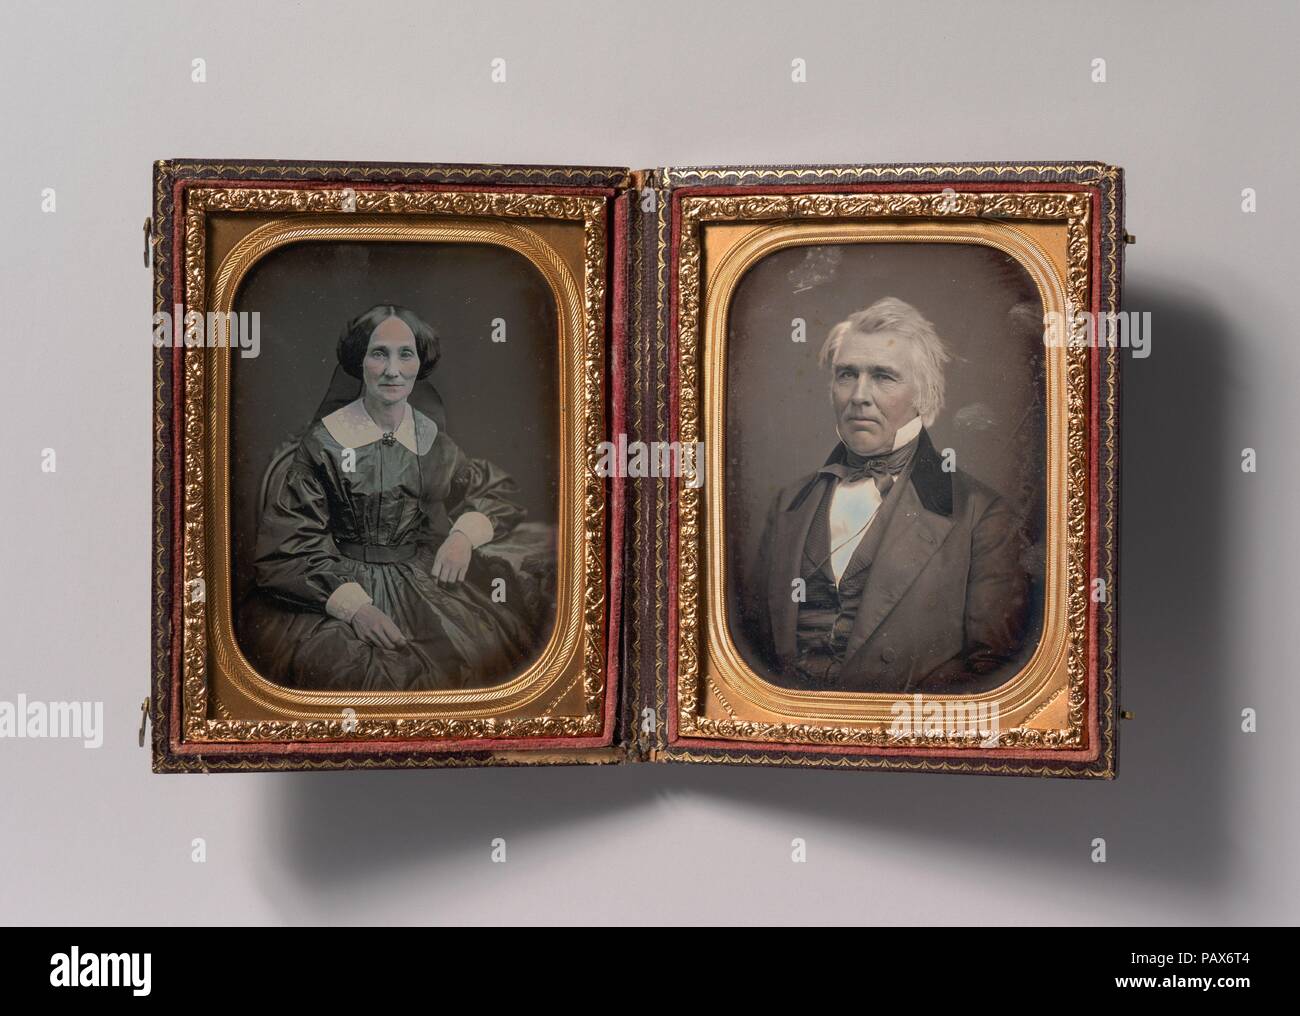 [Pair Porträts von Mann und Frau (Mann und Frau?)]. Artist: Jeremia Gurney (American, 1812-1895 Coxsackie, New York). Abmessungen: Bild: 9 x 6,4 cm (3 9/16 x 2 1/2 in.), jede Platte: 10,8 x 8,3 cm (4 1/4 x 3 1/4 in.), Jeweils: 1,9 x 11,9 x 9,5 cm (3/4 x 4 11/16 x 3 3/4 in.). Datum: 1852-60. Museum: Metropolitan Museum of Art, New York, USA. Stockfoto